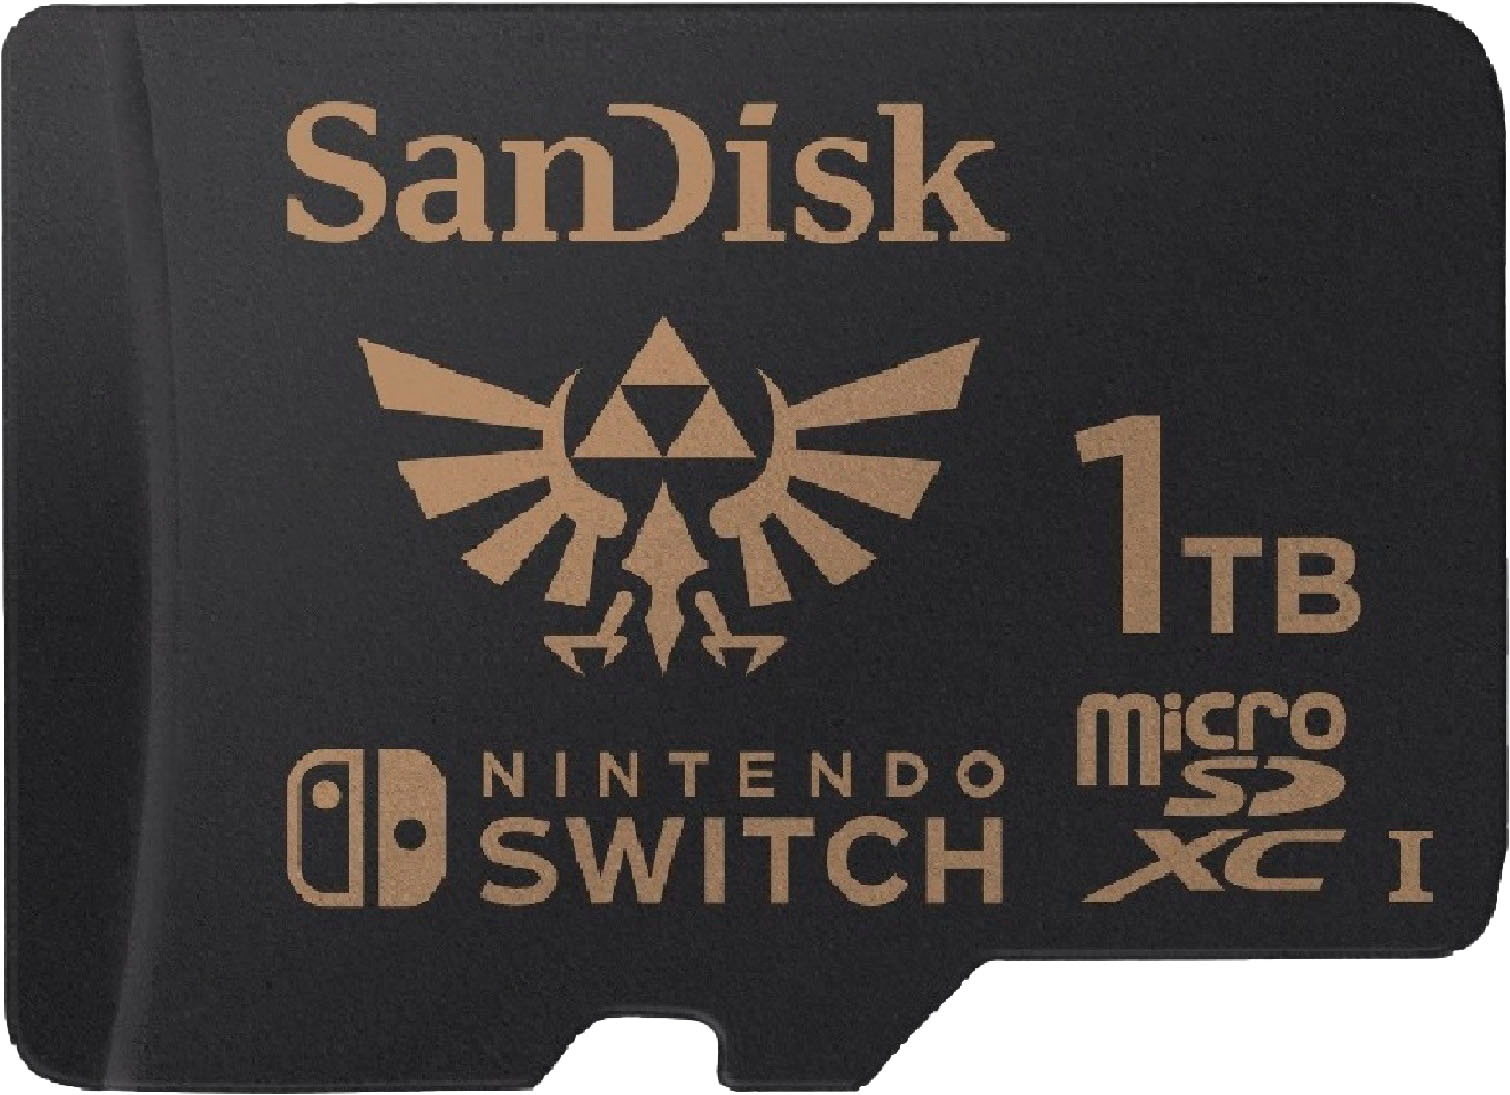 SanDisk 256GB microSDXC UHS-I Memory Card Licensed for